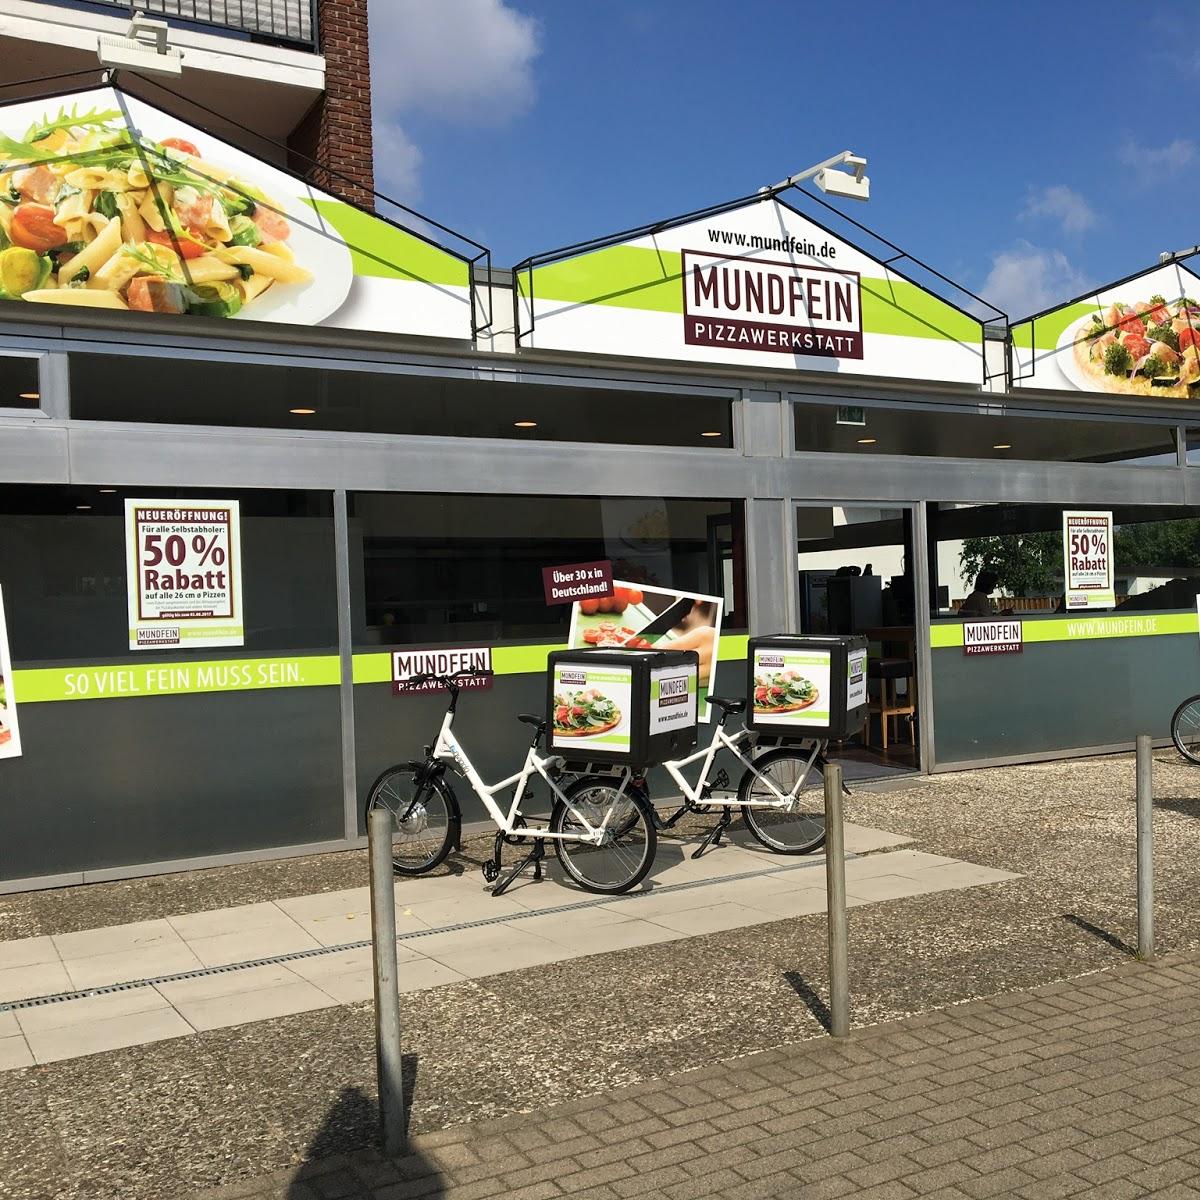 Restaurant "MUNDFEIN Pizzawerkstatt Bielefeld" in Bielefeld